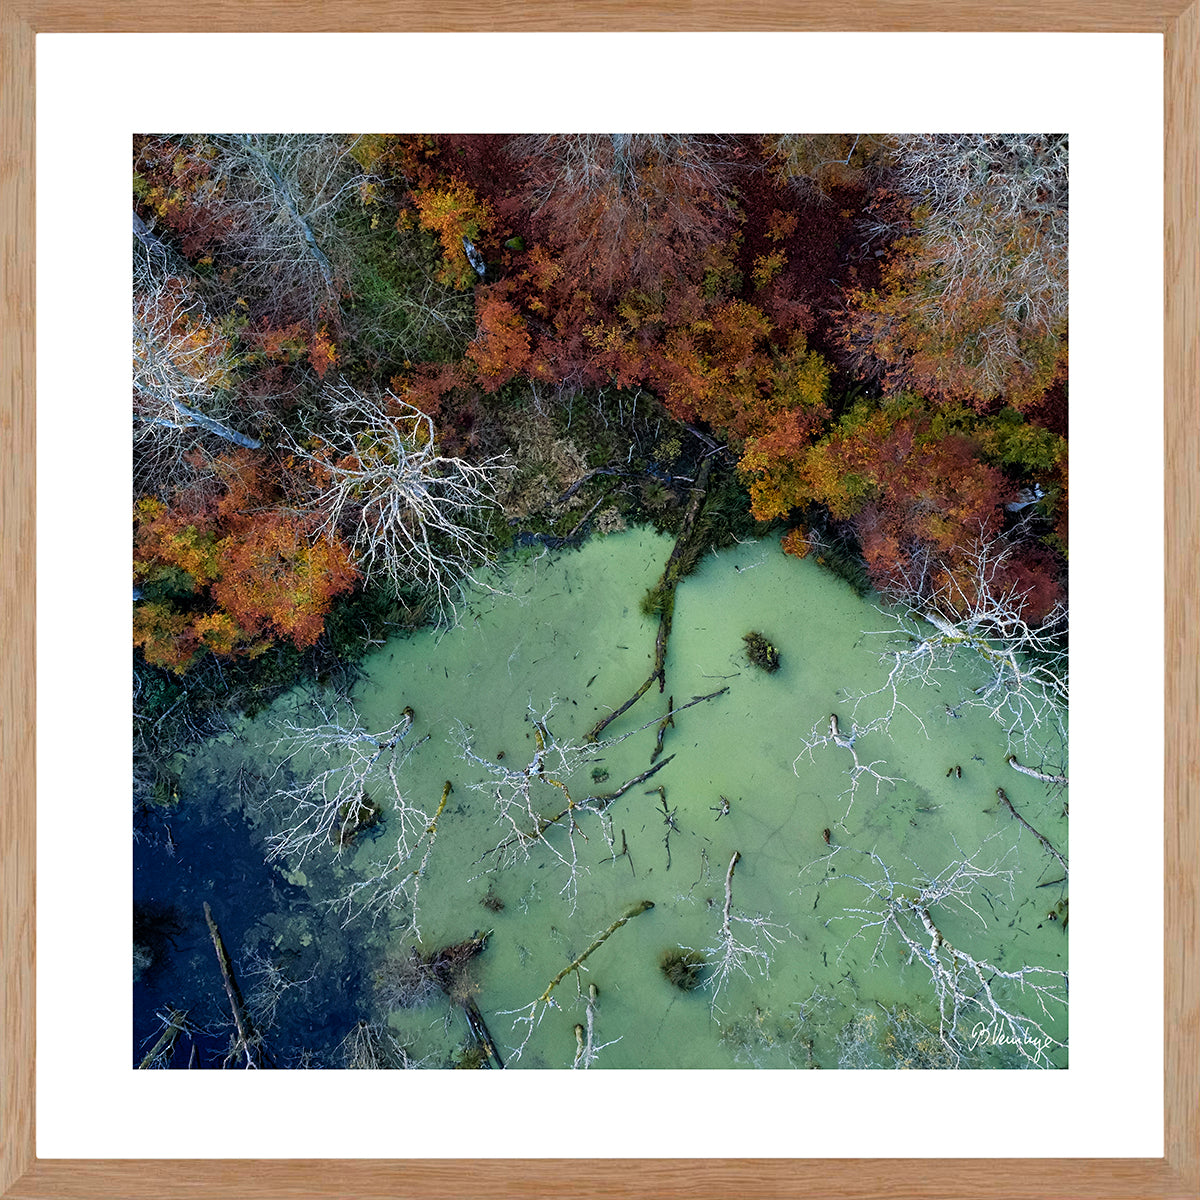 Marselisborgskoven i efterårsfarver. Grøn sø dækket af andemad, med udgåede træer. Brændte farver, grøn og blå.